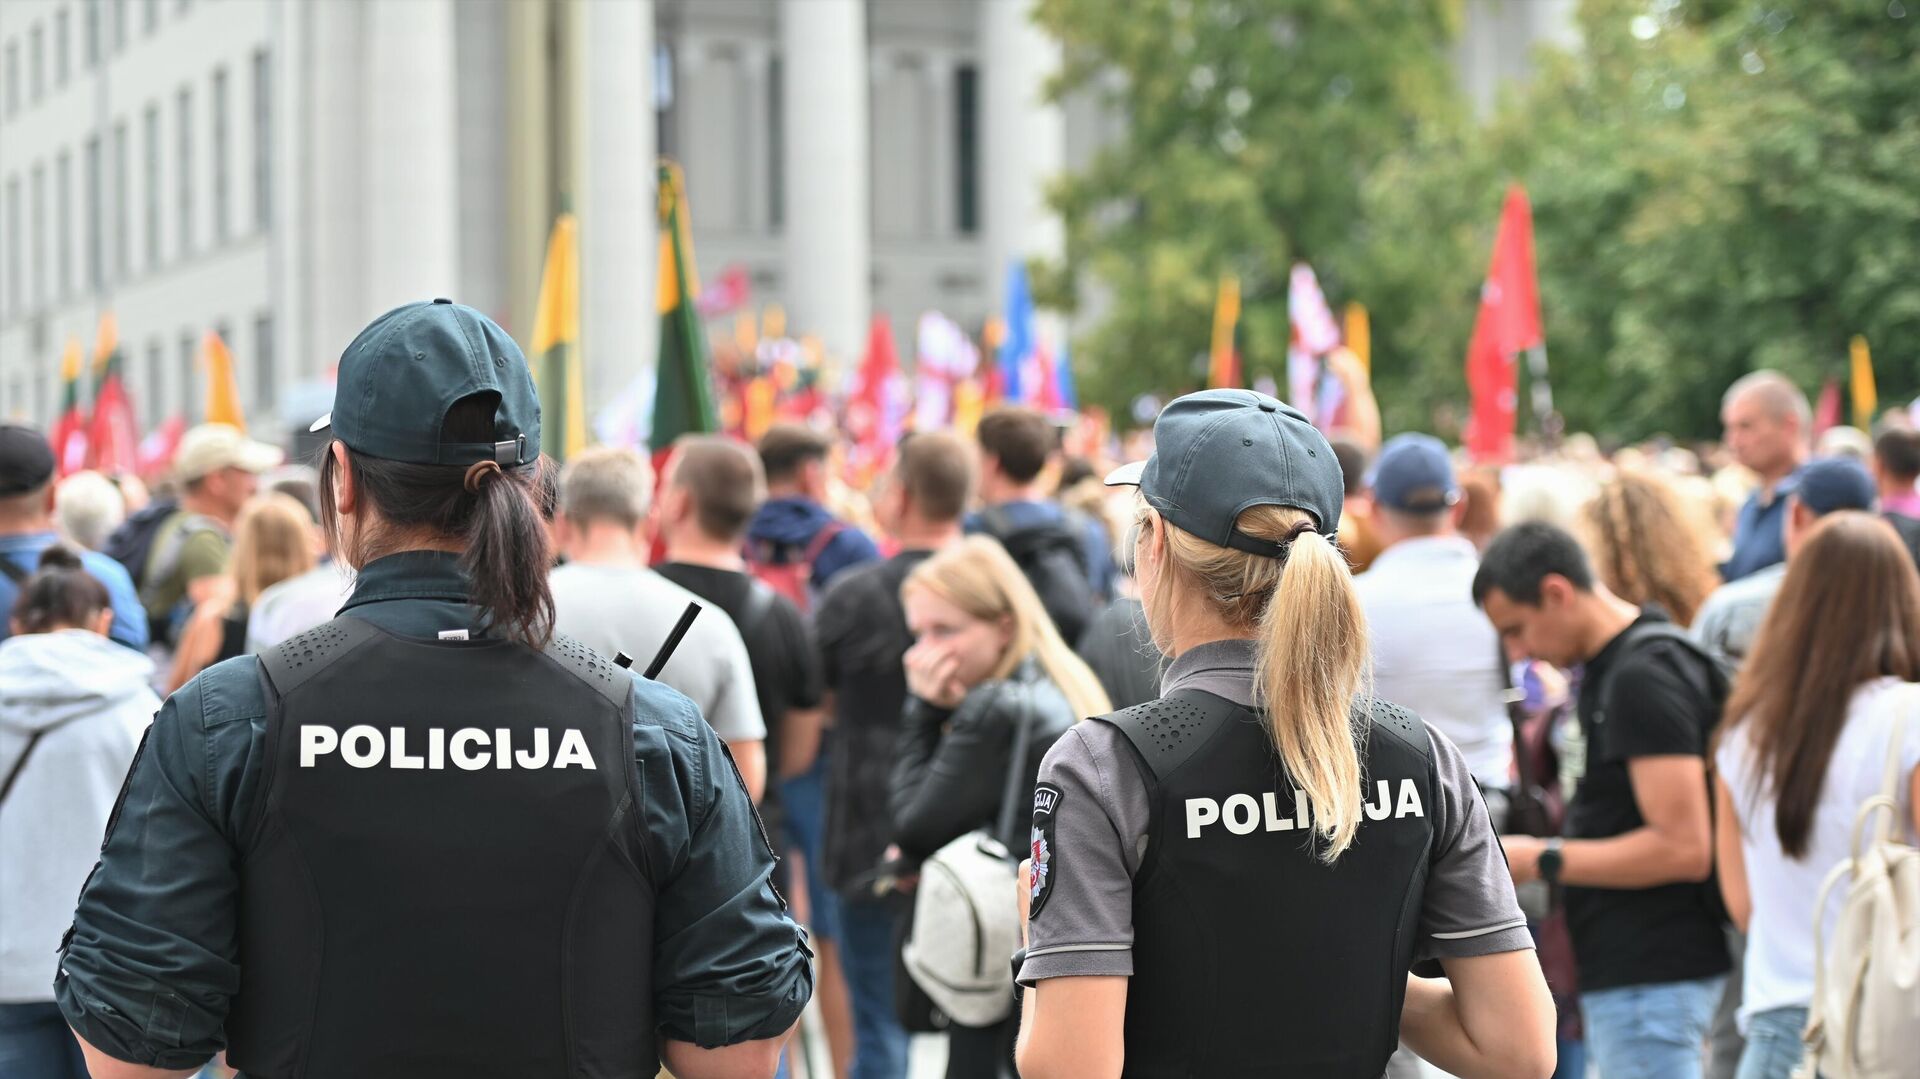 Полиция на митинге у здания Сейма Литвы - Sputnik Литва, 1920, 11.08.2021